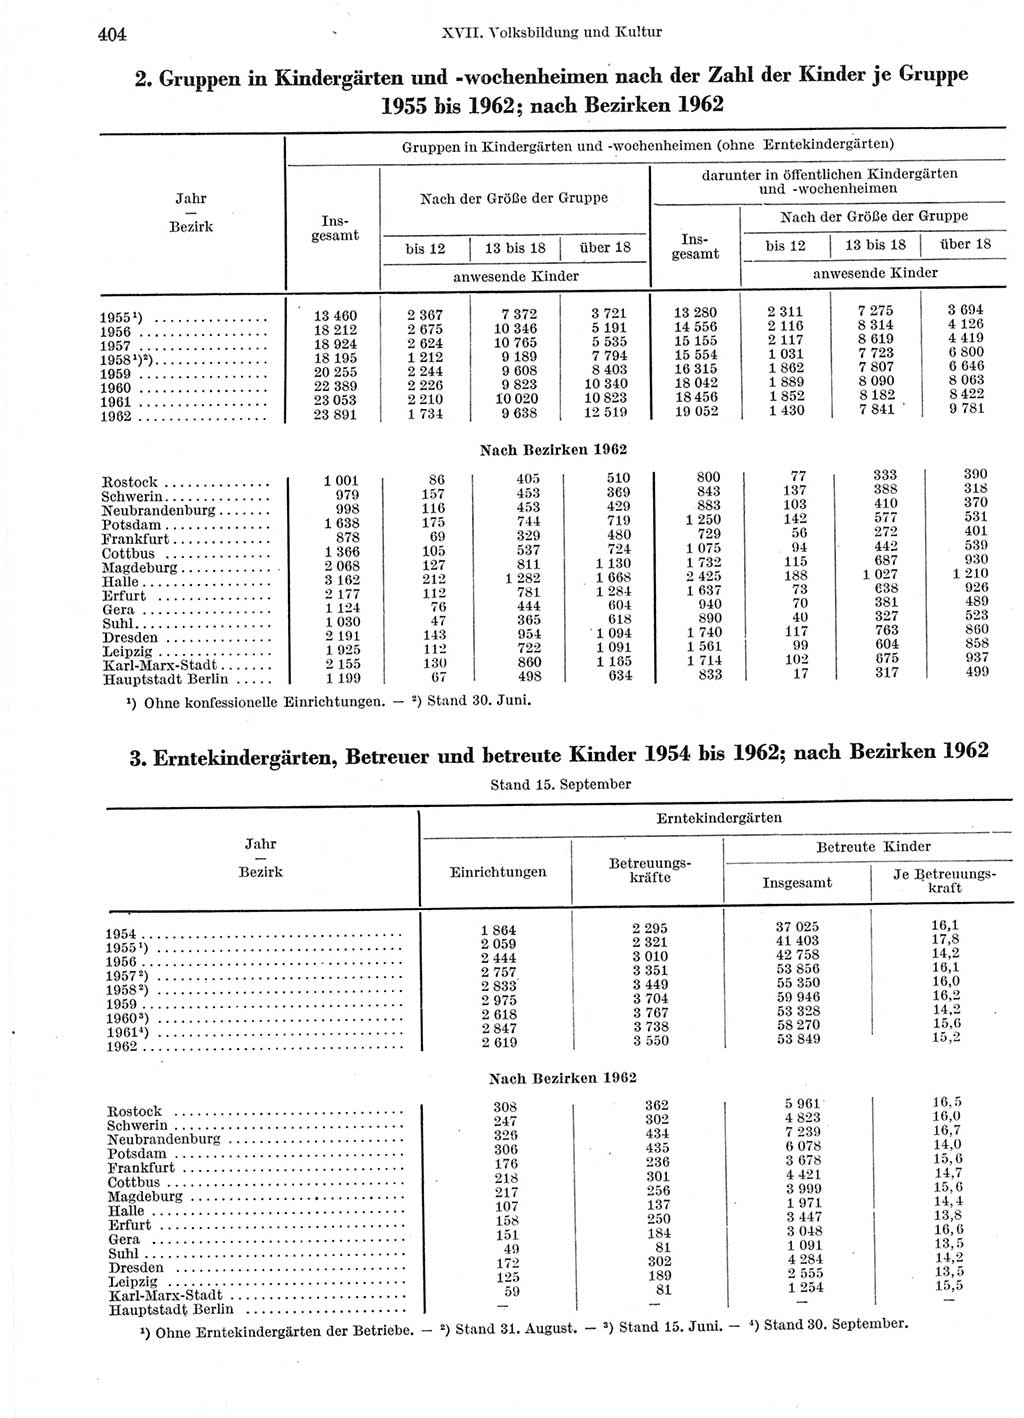 Statistisches Jahrbuch der Deutschen Demokratischen Republik (DDR) 1963, Seite 404 (Stat. Jb. DDR 1963, S. 404)